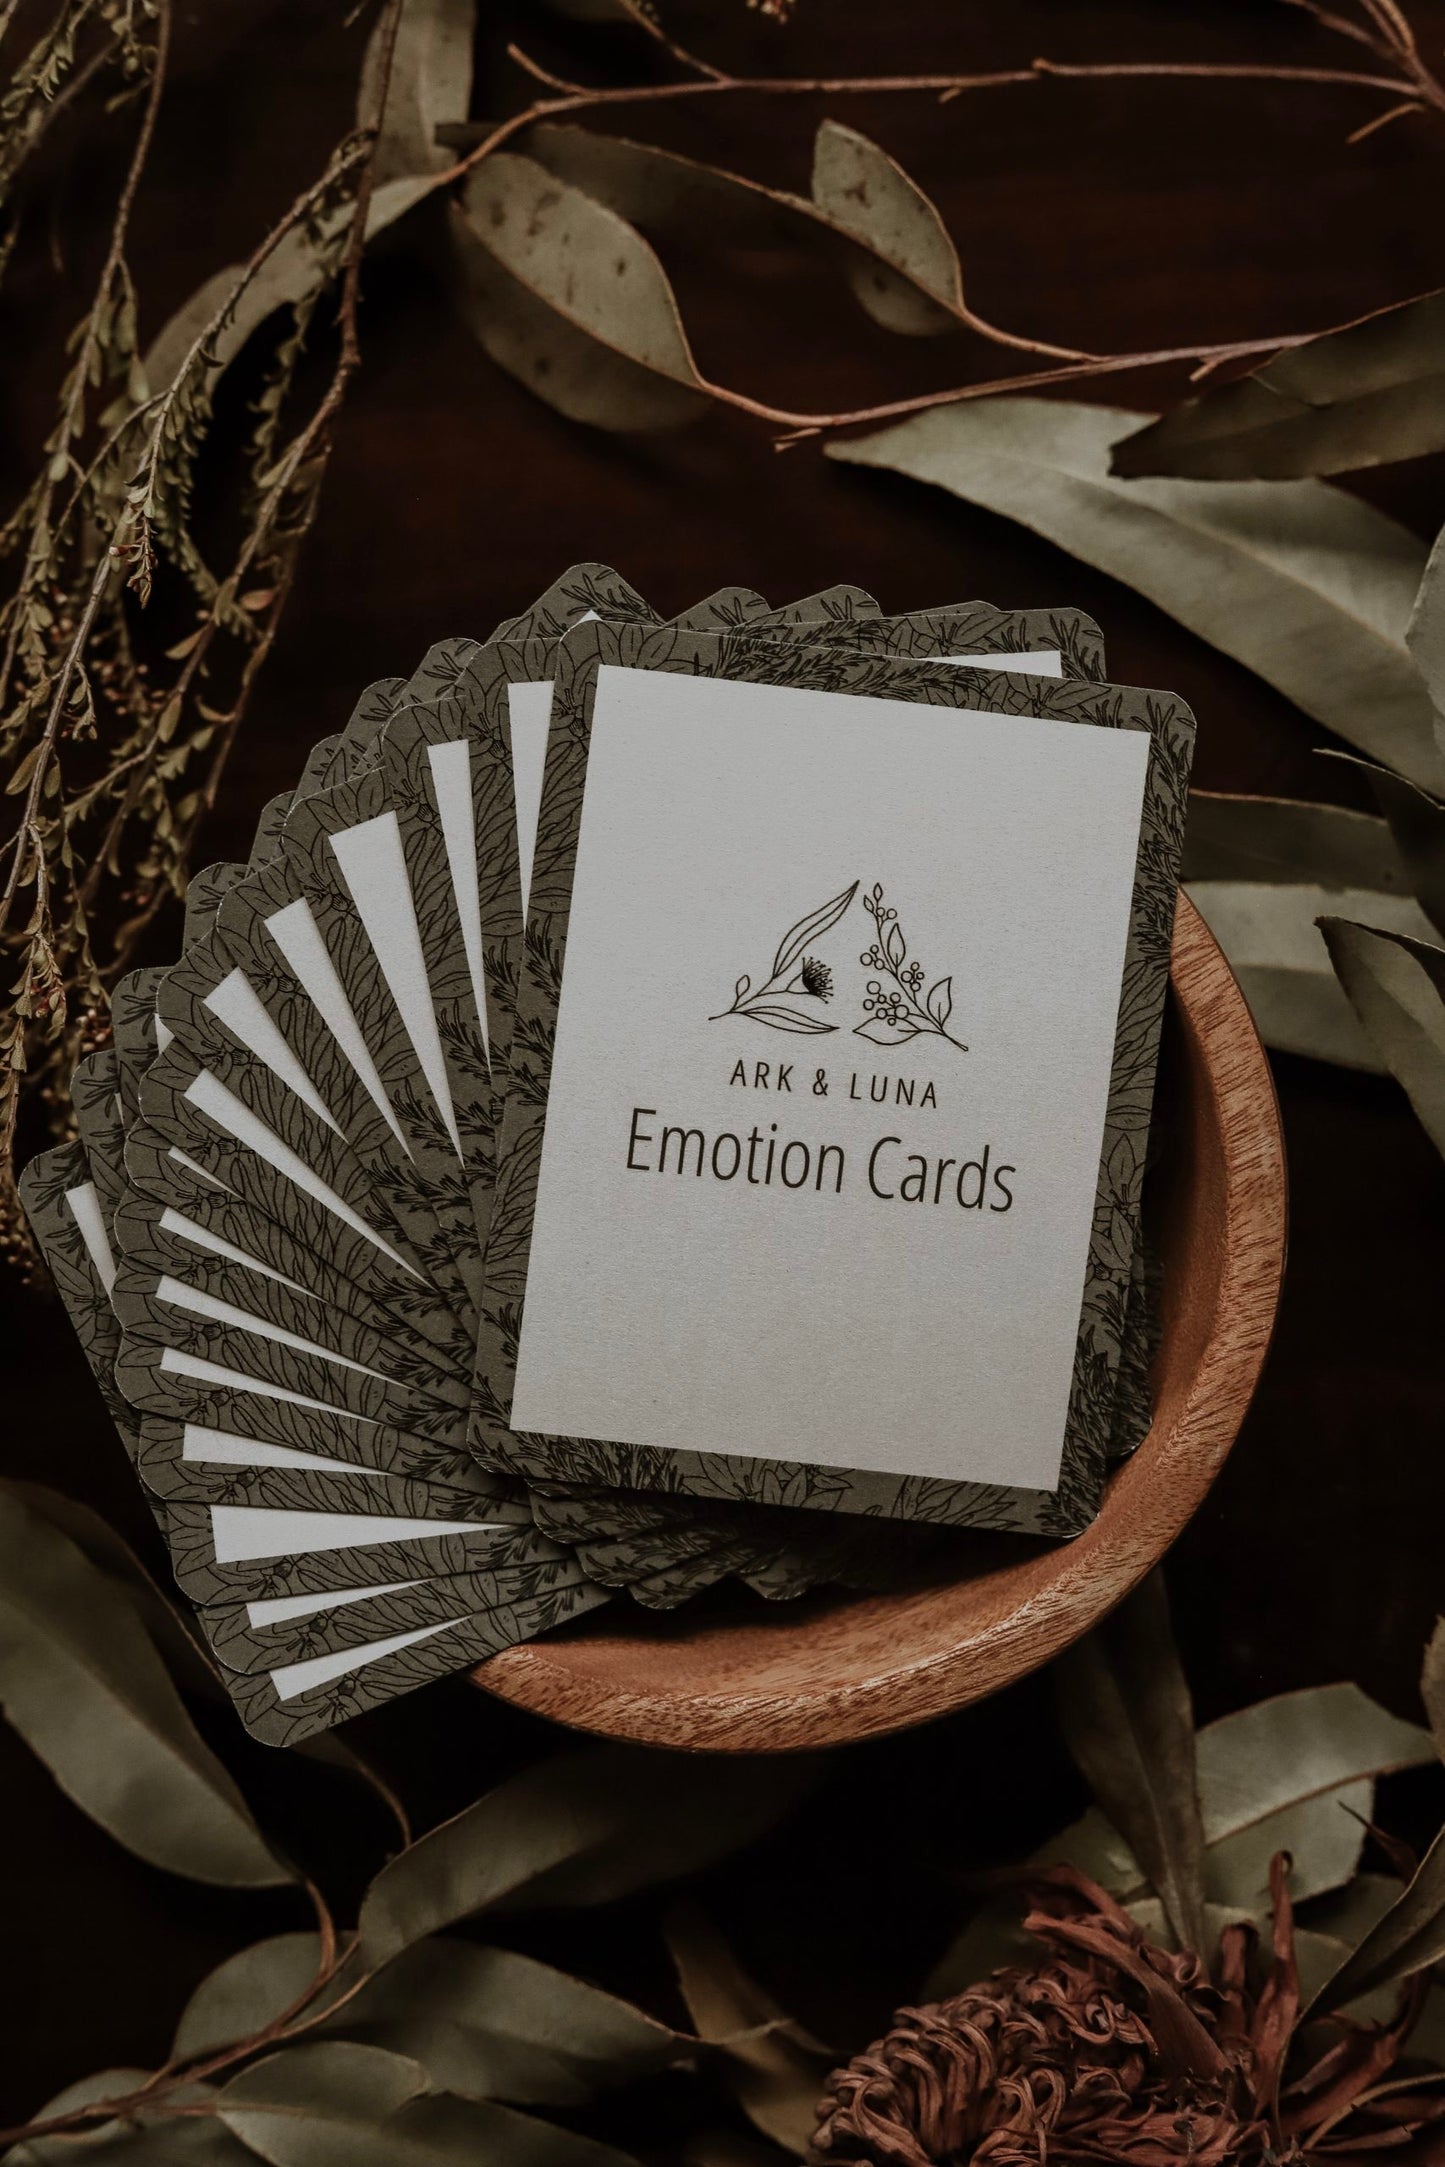 Emotion cards for kids